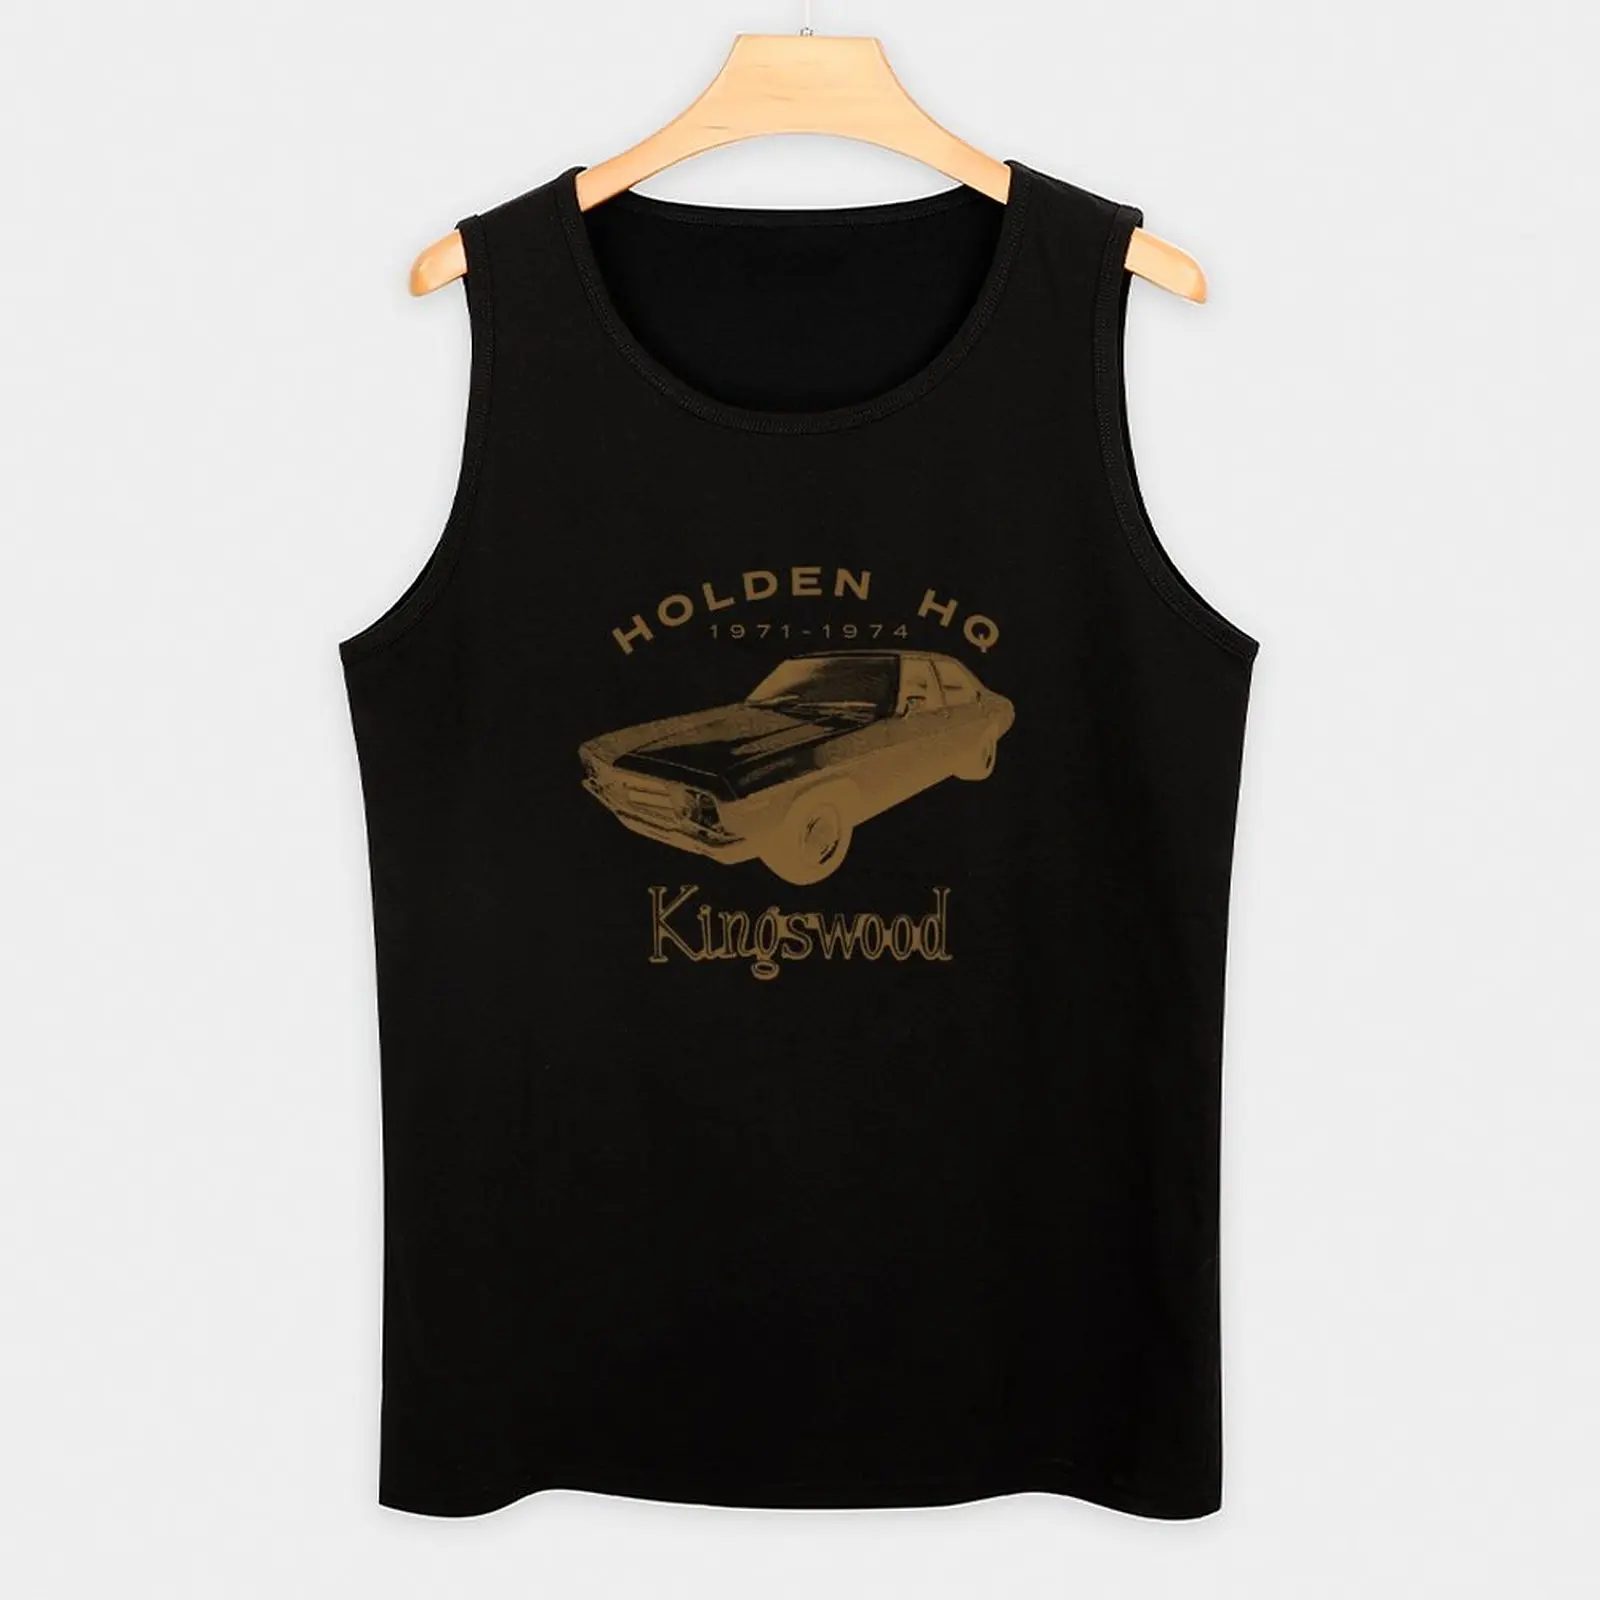 Yeni Holden HQ Kingswood Tank Top kas t-shirt sevimli üstleri Yelek erkek . ' - ' . 2